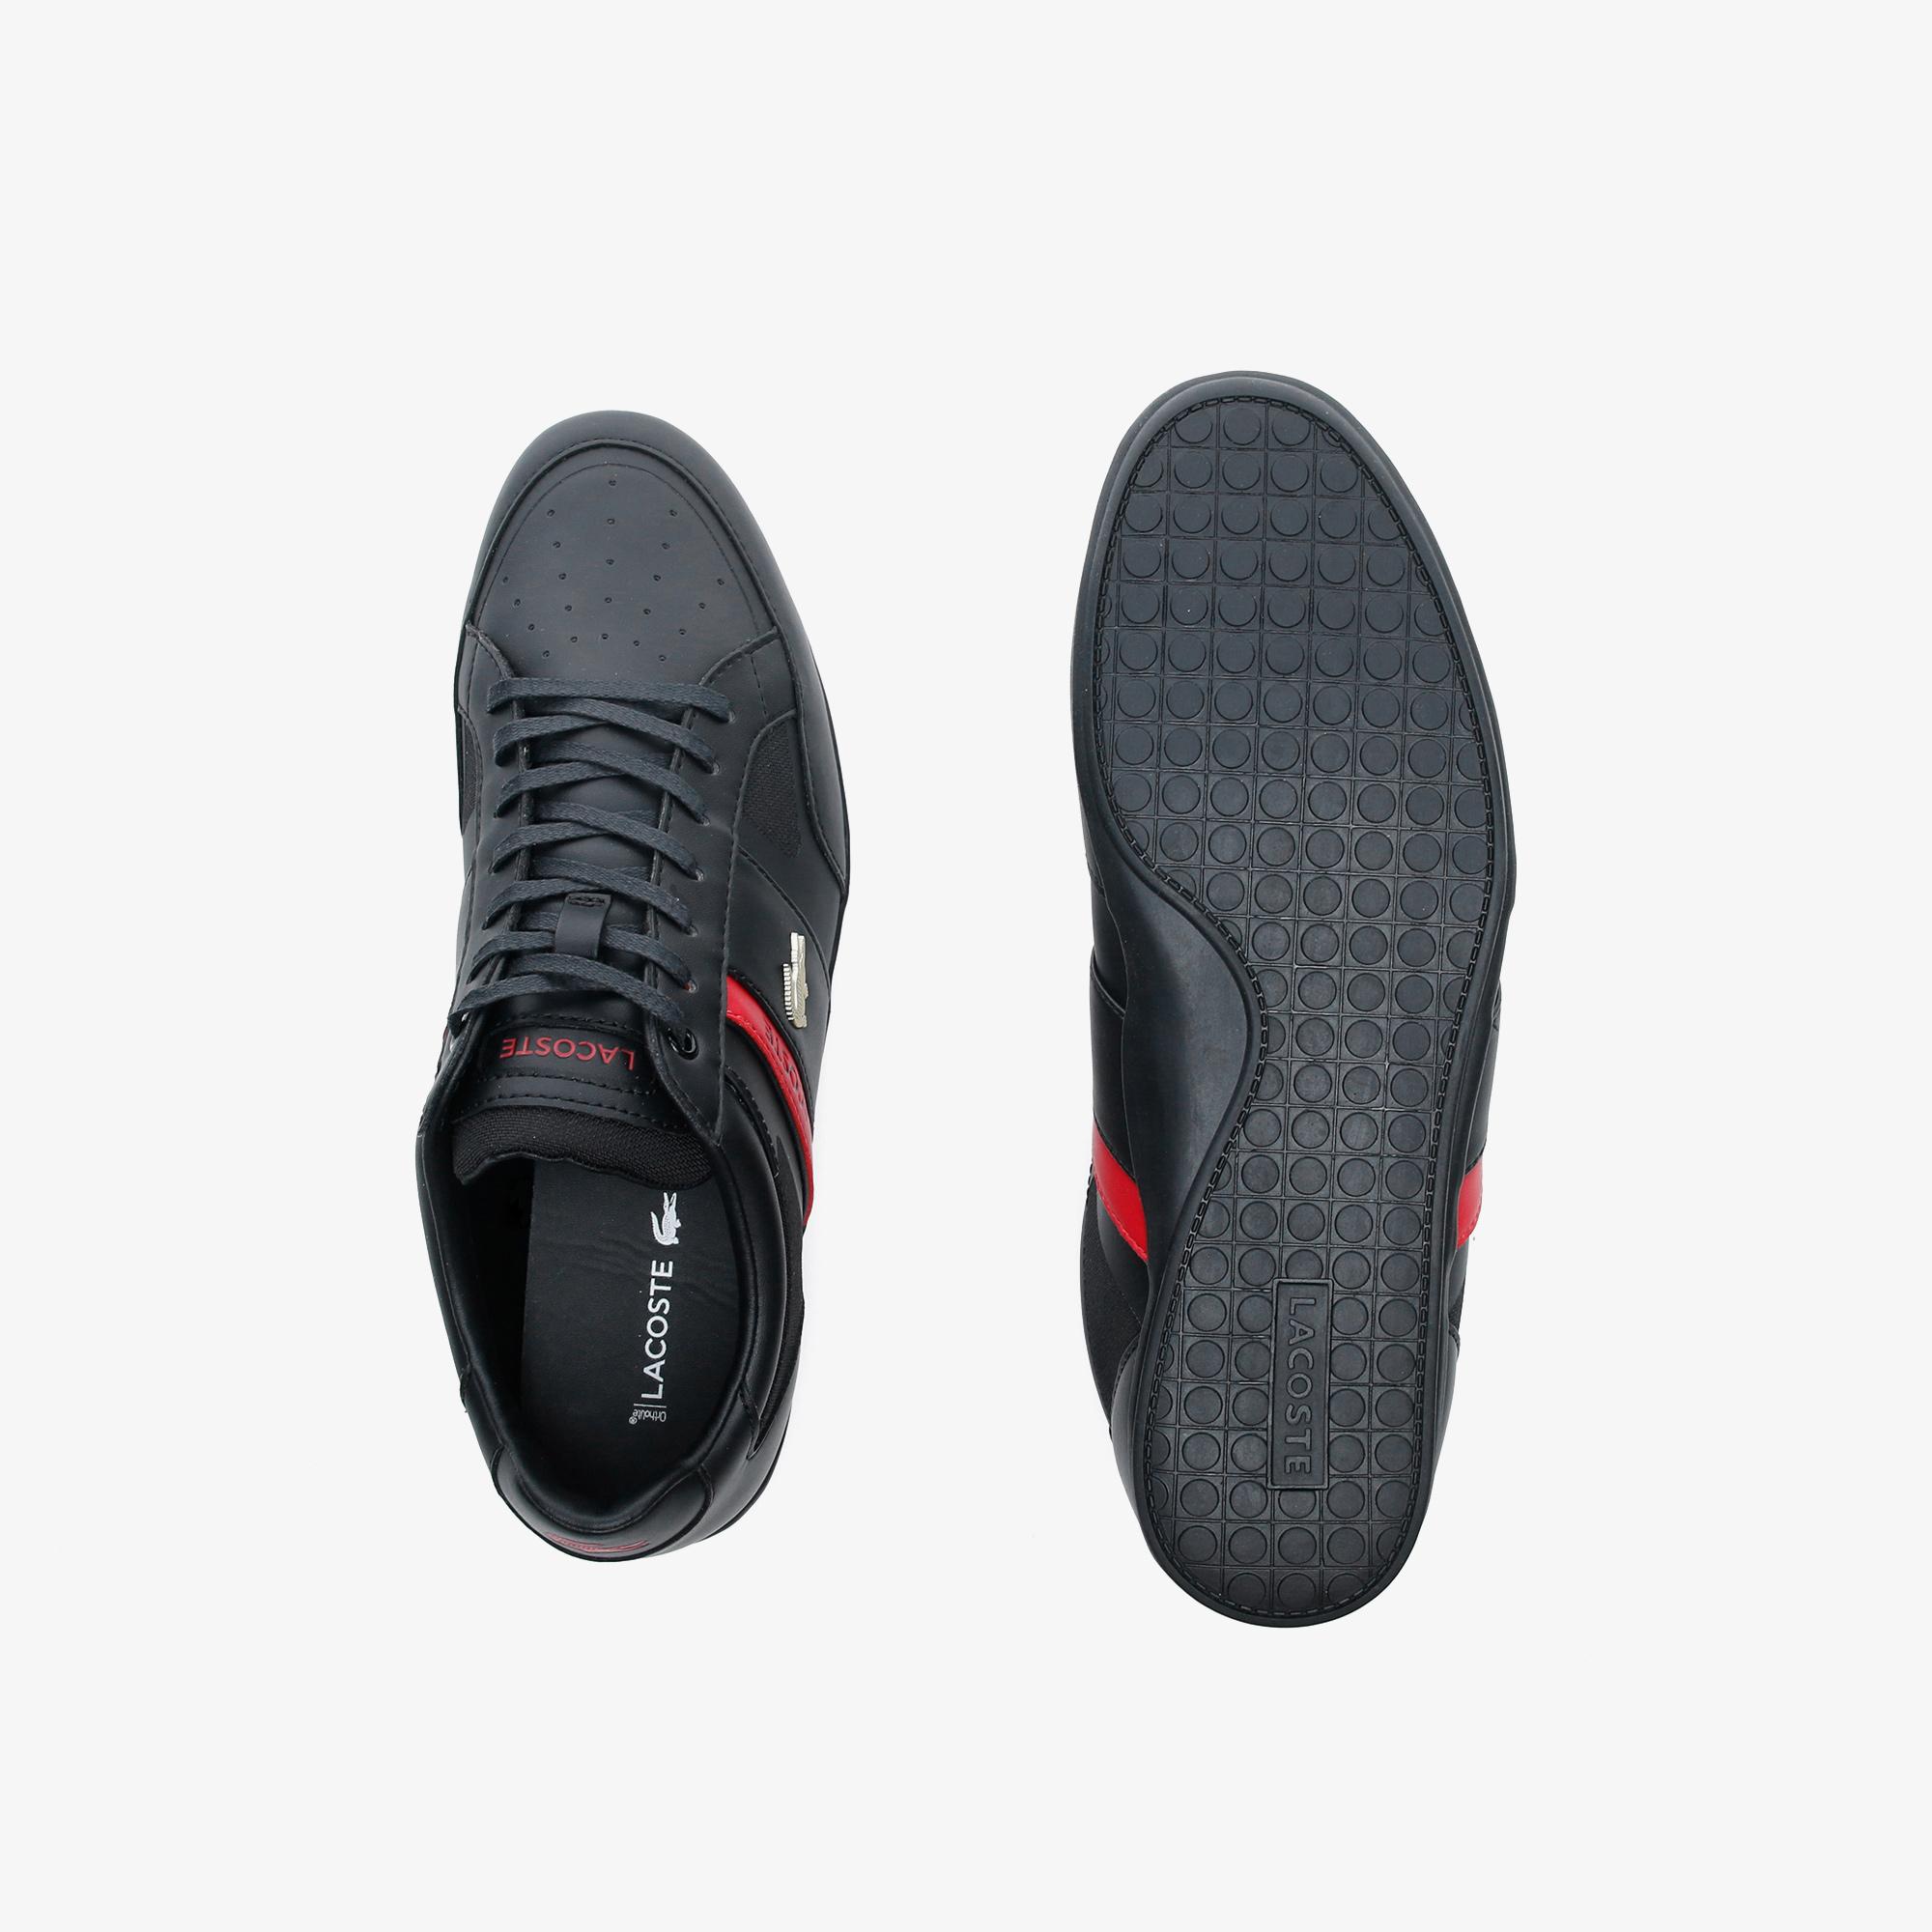 Lacoste Chaymon Tech 0120 3 Cma Erkek Siyah - Kırmızı Casual Ayakkabı. 7